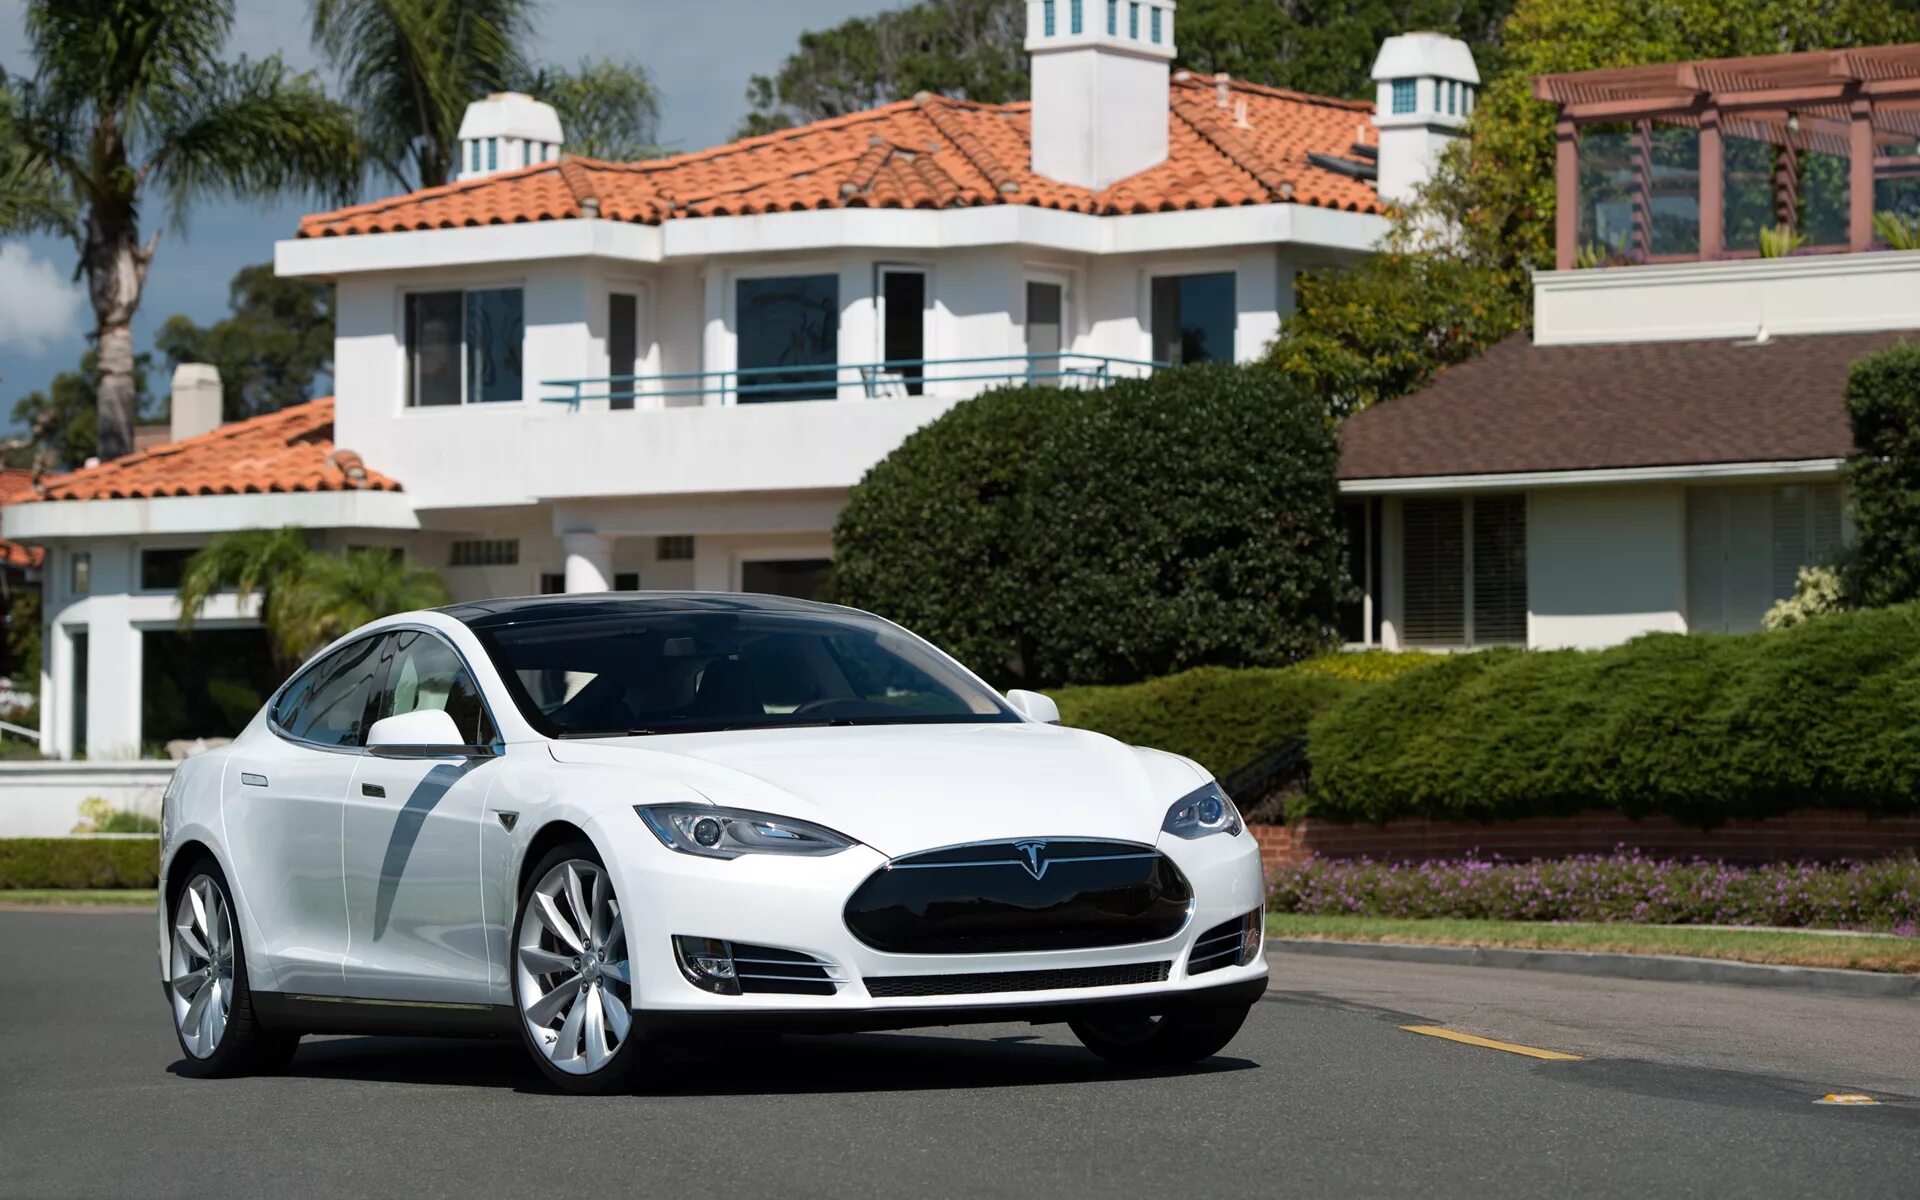 Тесла модель s. Tesla седан model s. Tesla model s белая. Tesla model s 2013. Model s mobile